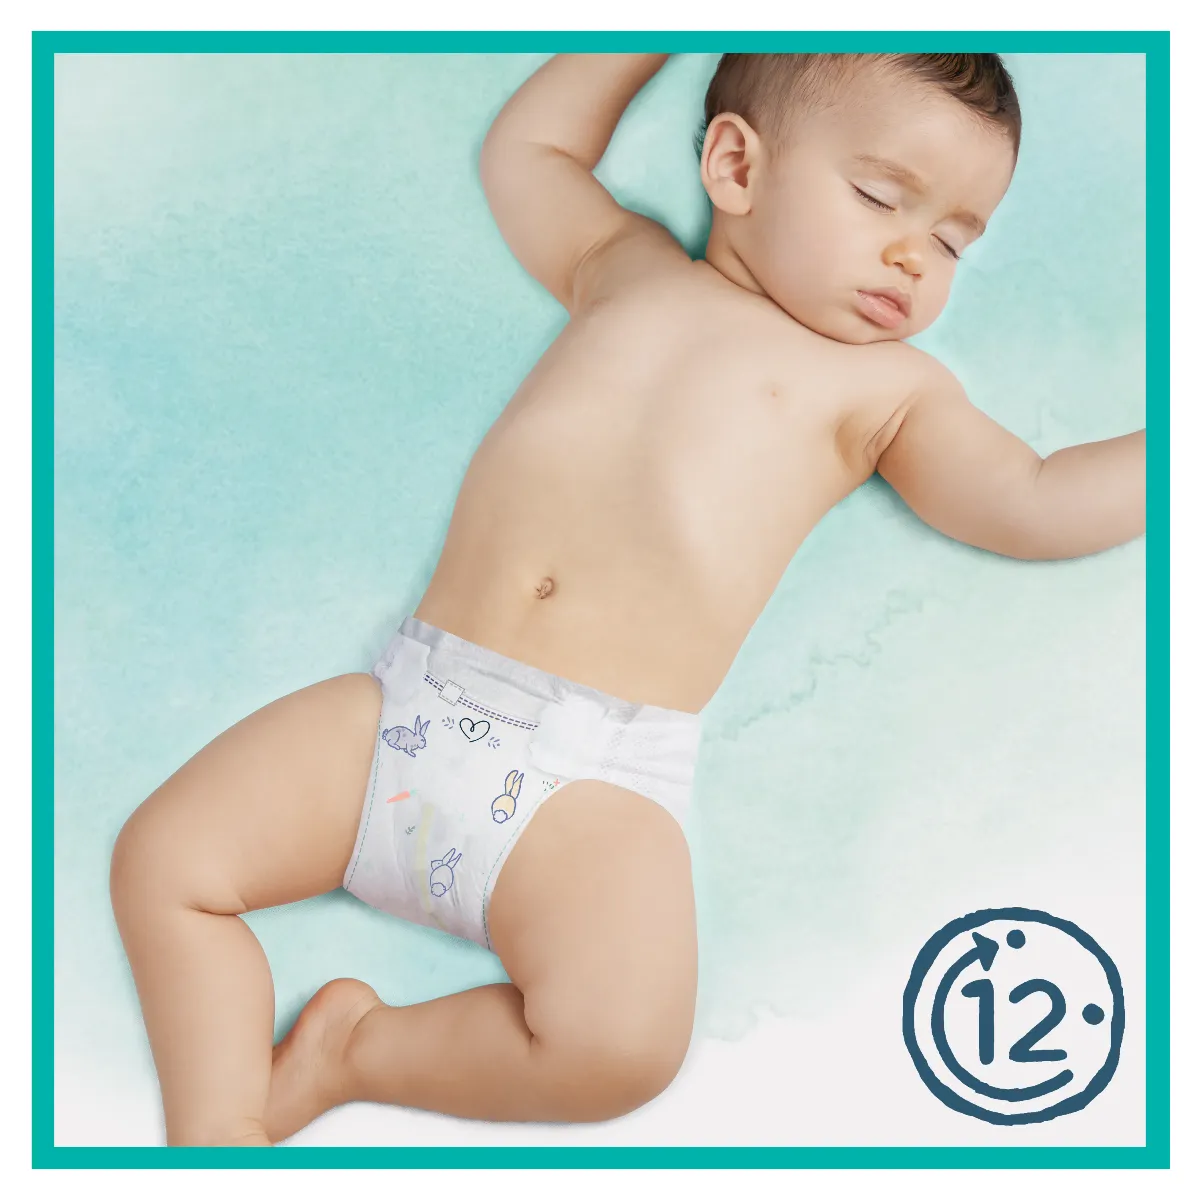 Pampers Harmonie Newborn pieluszki jednorazowe rozmiar 1, 2-5 kg, 50 szt. 